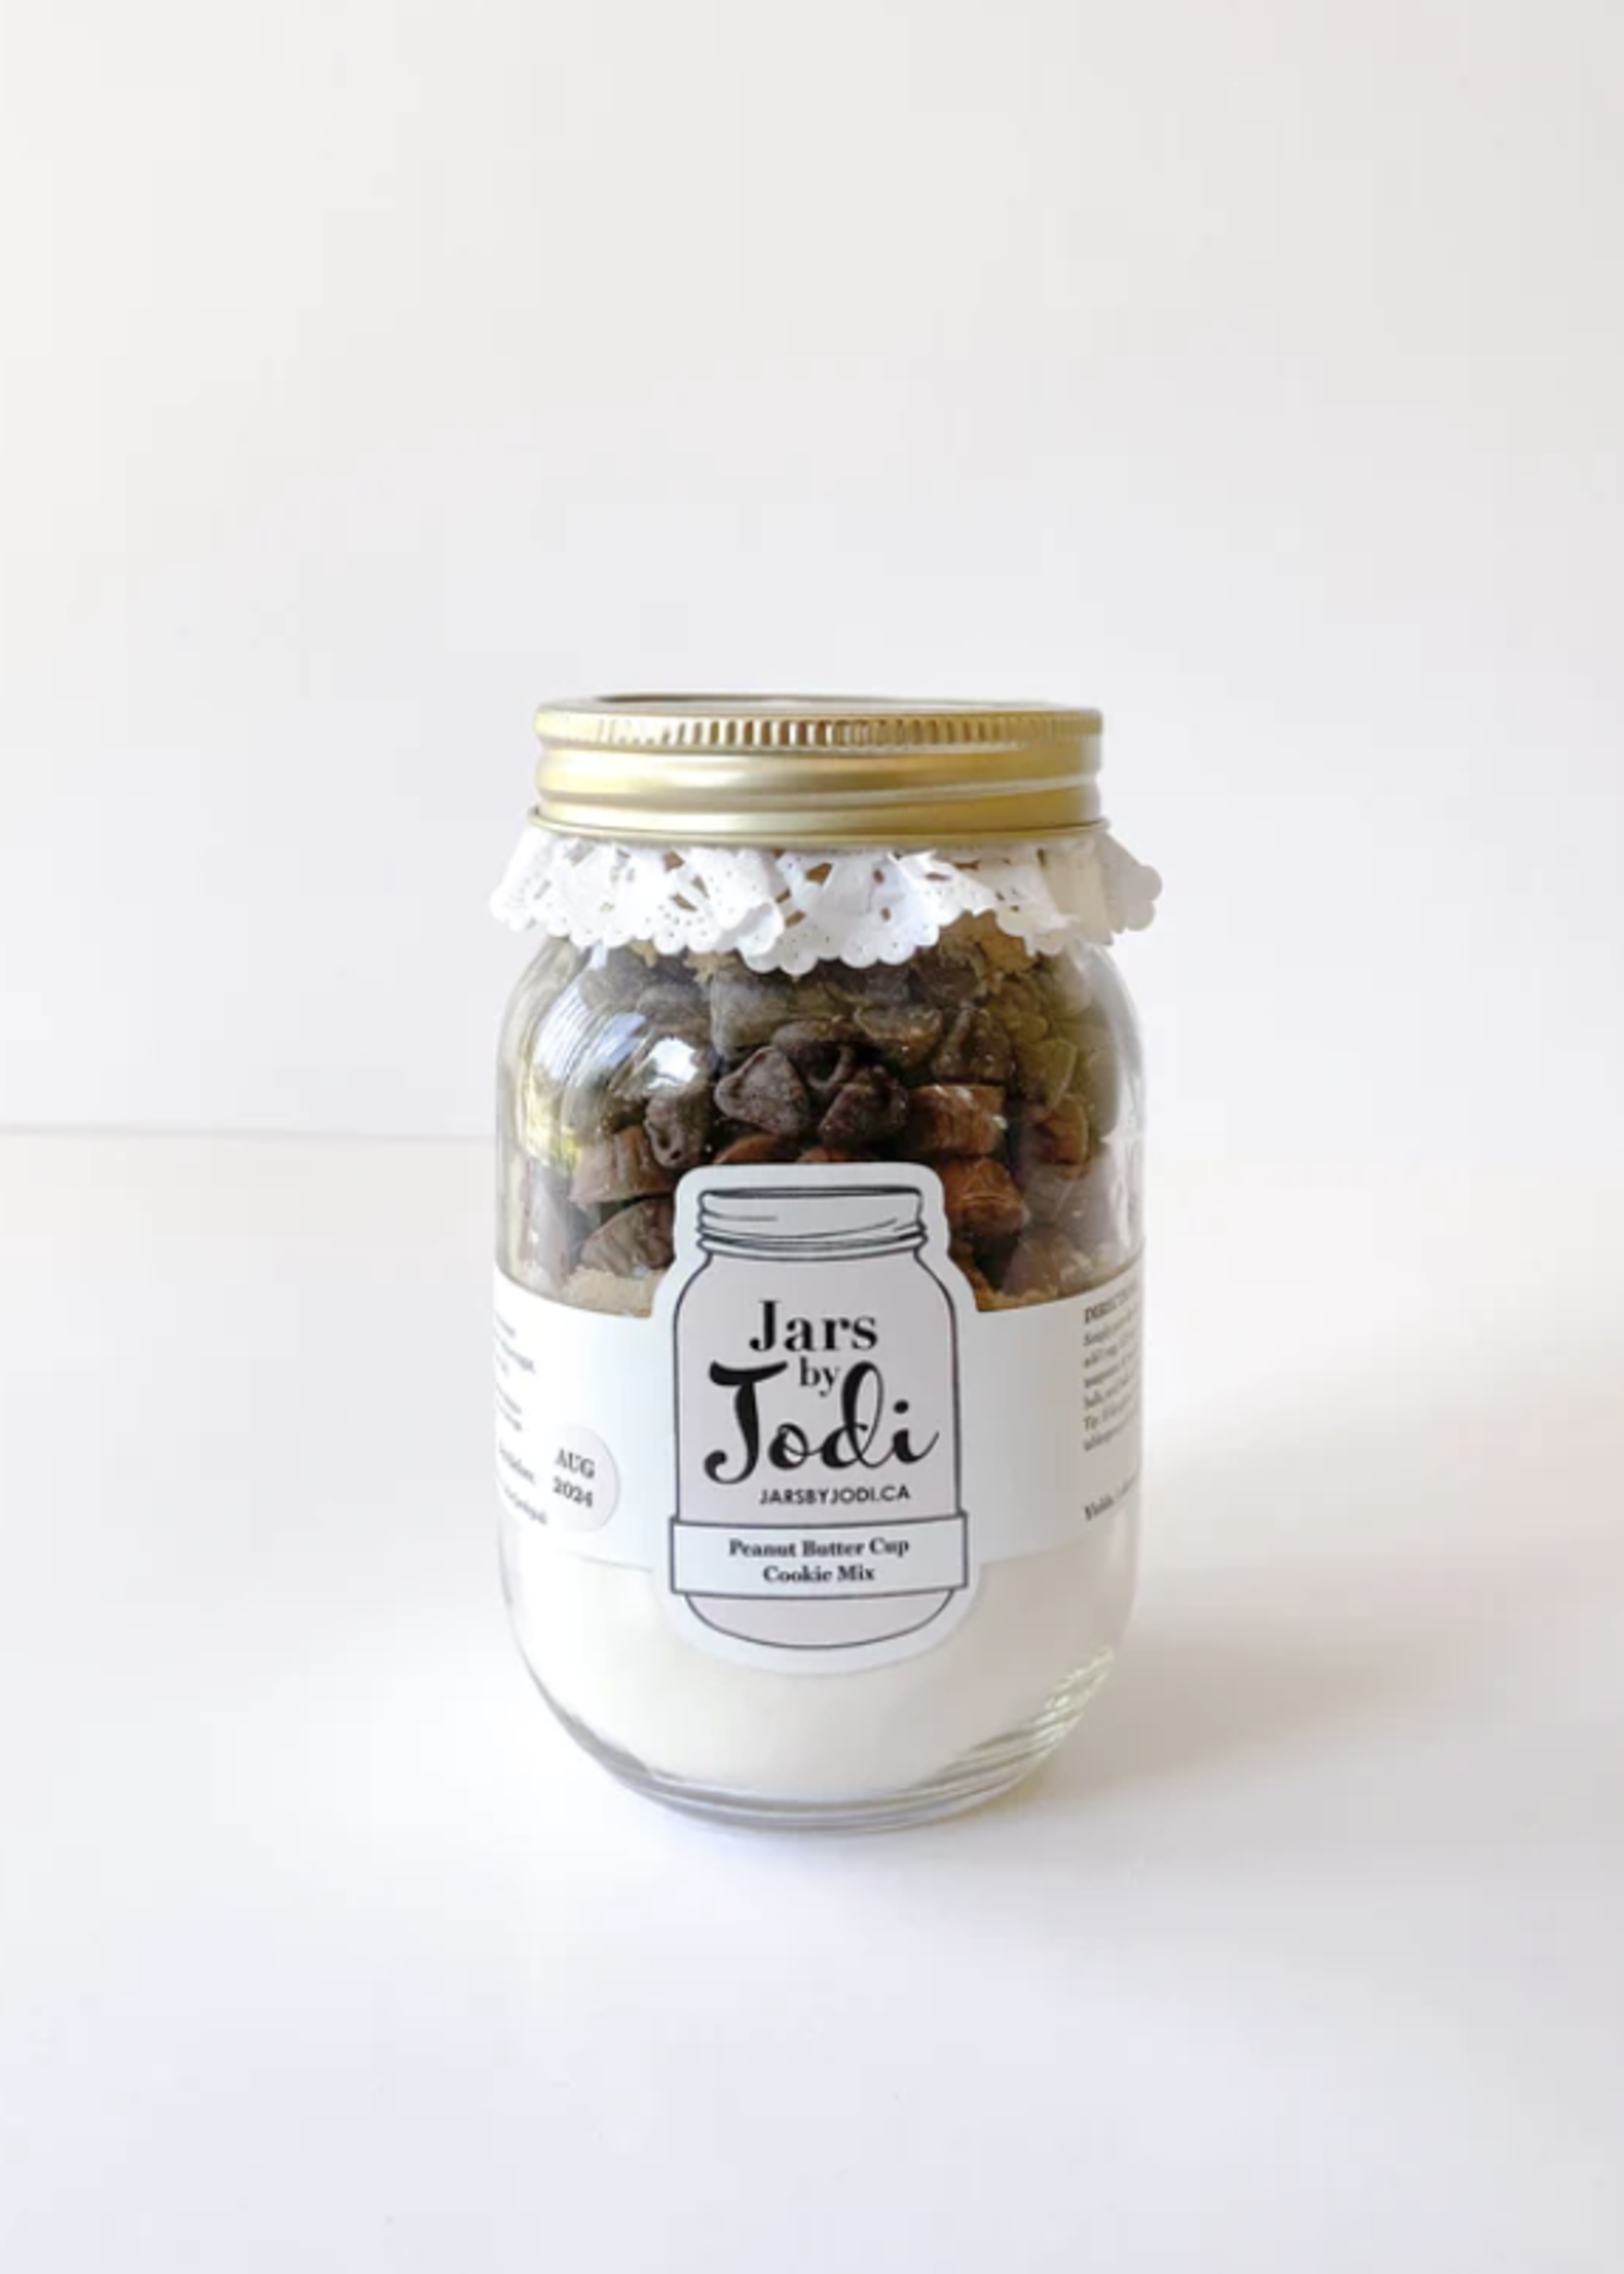 Jars By Jodi Peanut Butter Cup Cookies | Mini